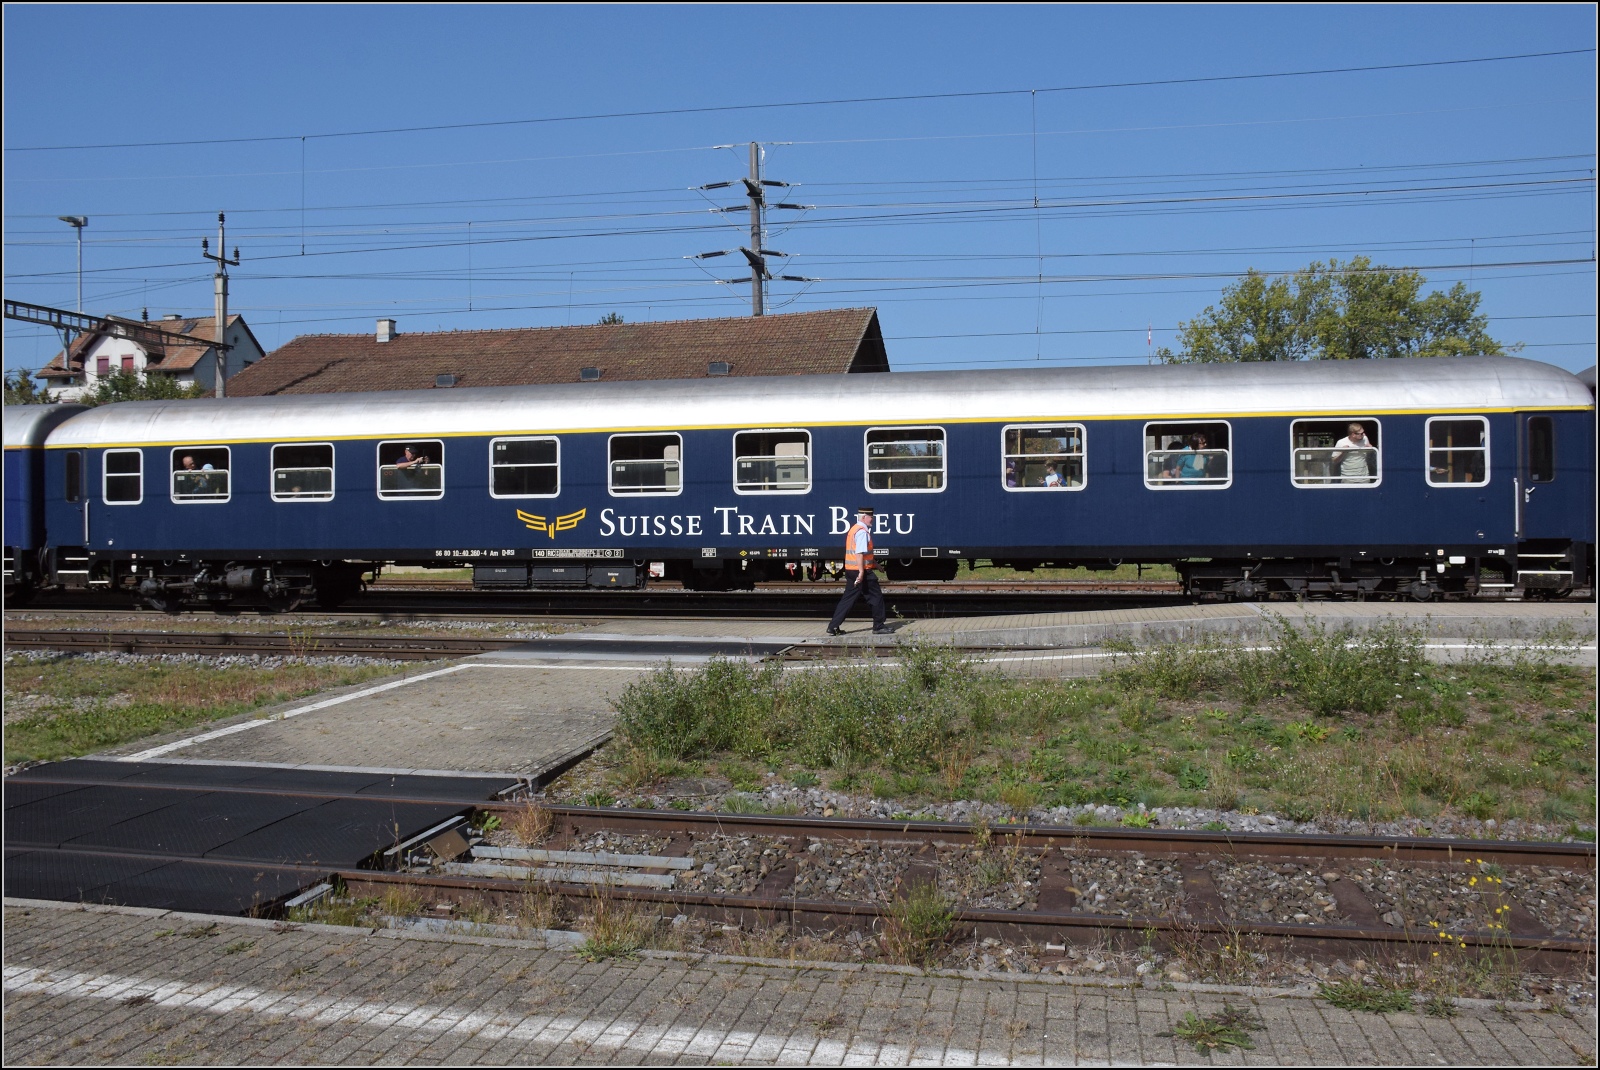 A 3/5 auf dem Schweizer Bähnle. 

Re 4/4 II 11393 brachte den Zug rückwärts in Abfahrposition. Der Swiss Train Bleu erst mal auf dem Präsentierteller. Hier der Erstklasswagen Am 56 80 10-40 360-4 D-IRSI. Etzwilen, September 2023.